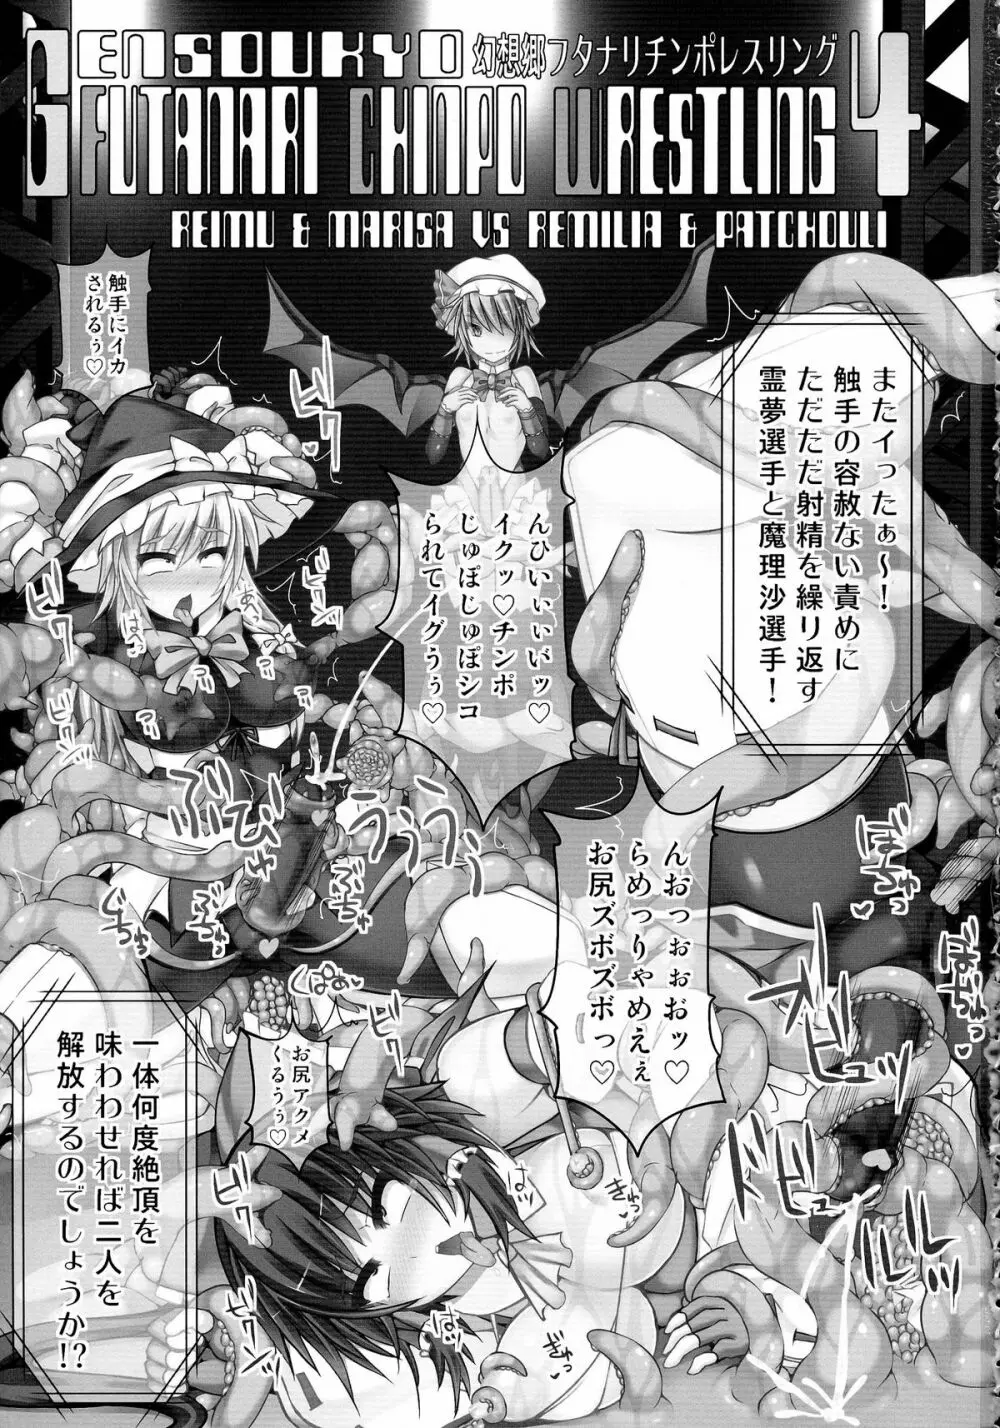 幻想郷フタナリチンポレスリング4 霊夢&魔理沙VSレミリア&パチュリー 3ページ